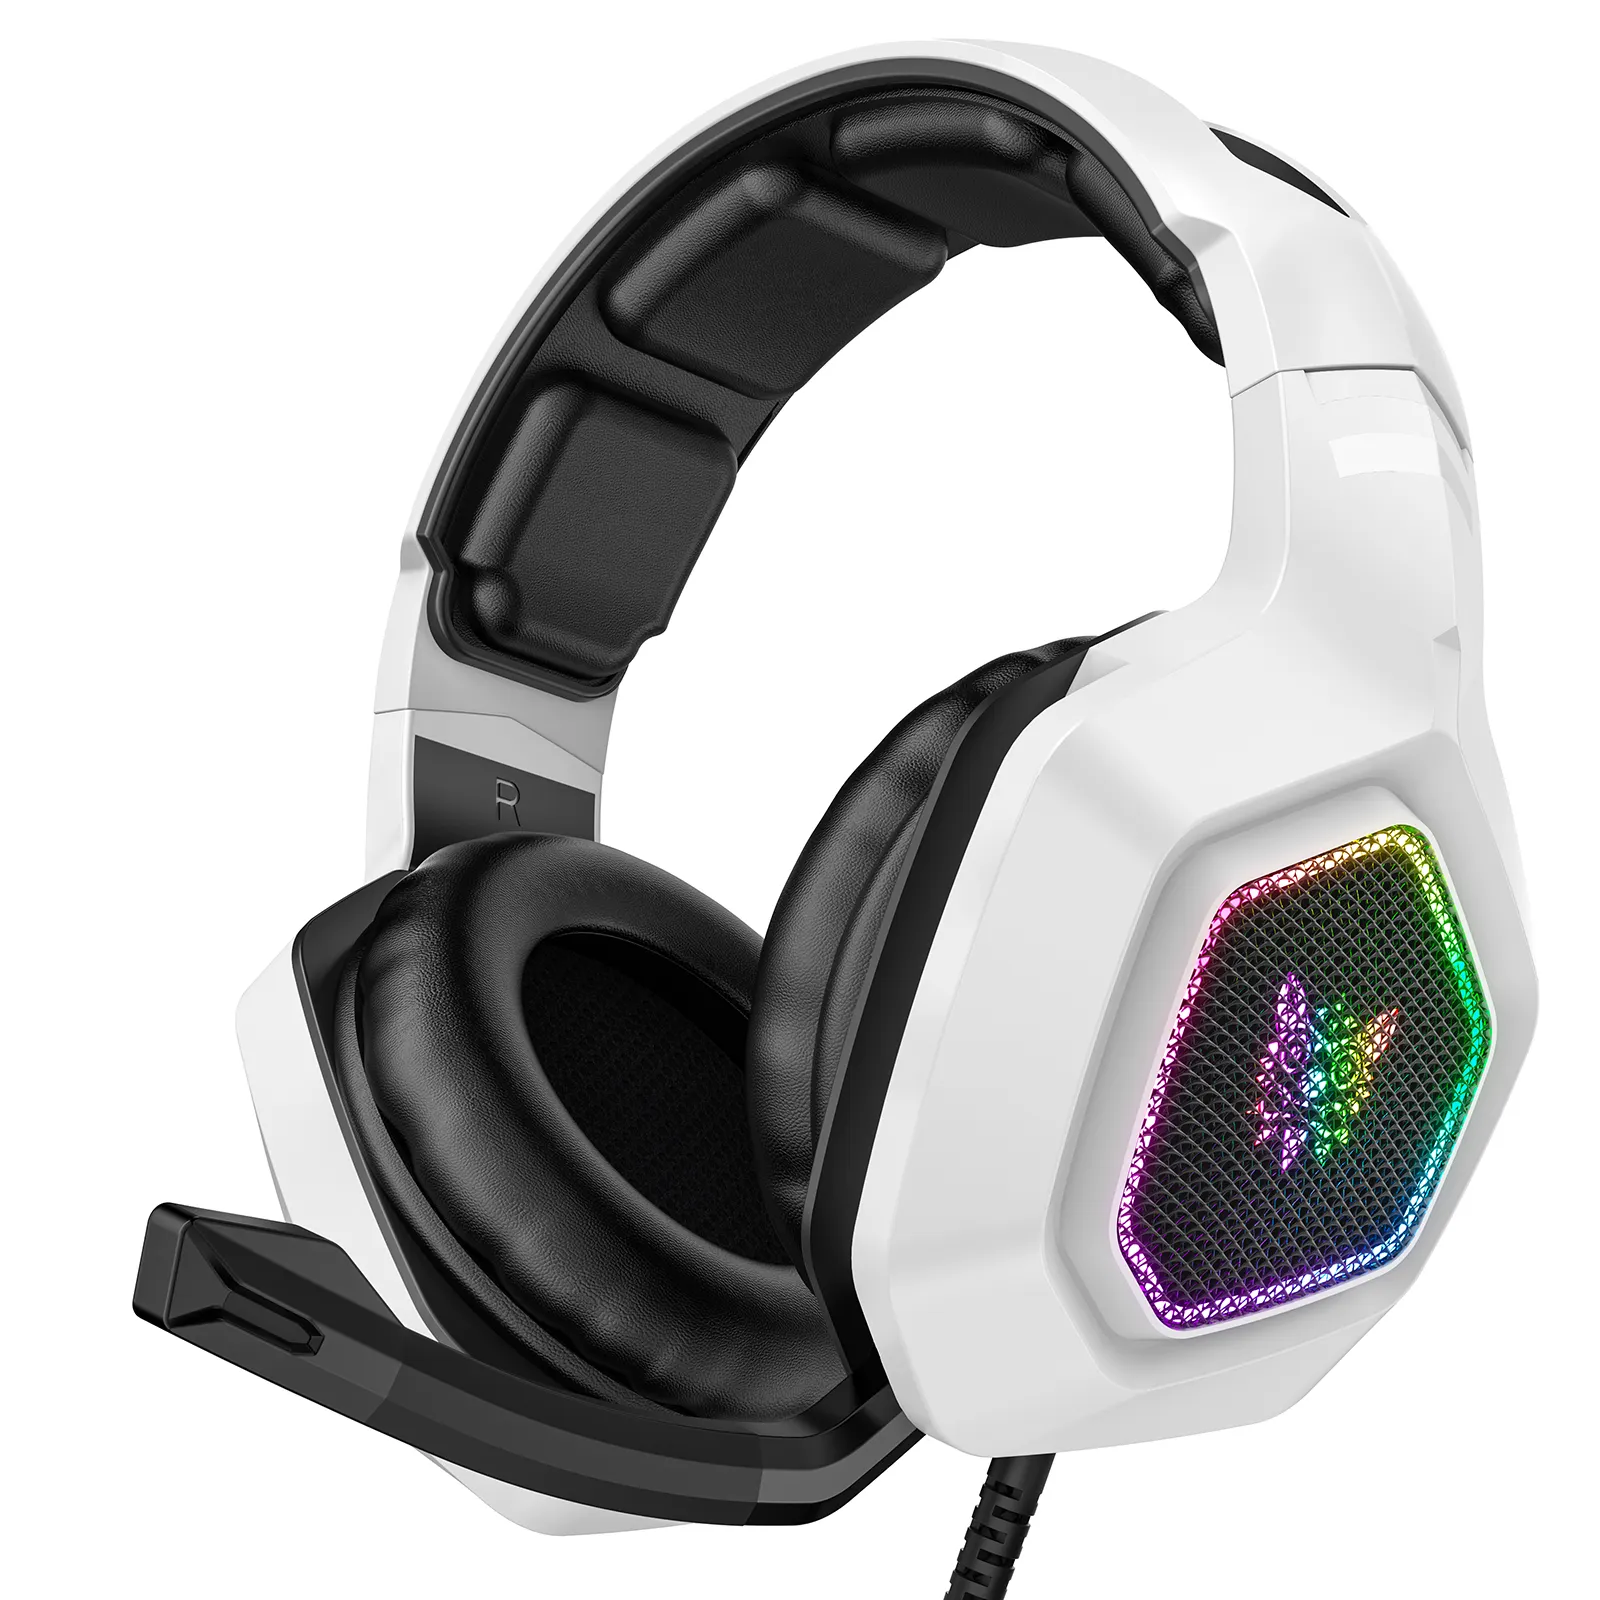 Onikuma fone de ouvido com cancelamento de ruído USB, fone de ouvido para jogos profissional K10 branco, equipado com microfone, preço de atacado